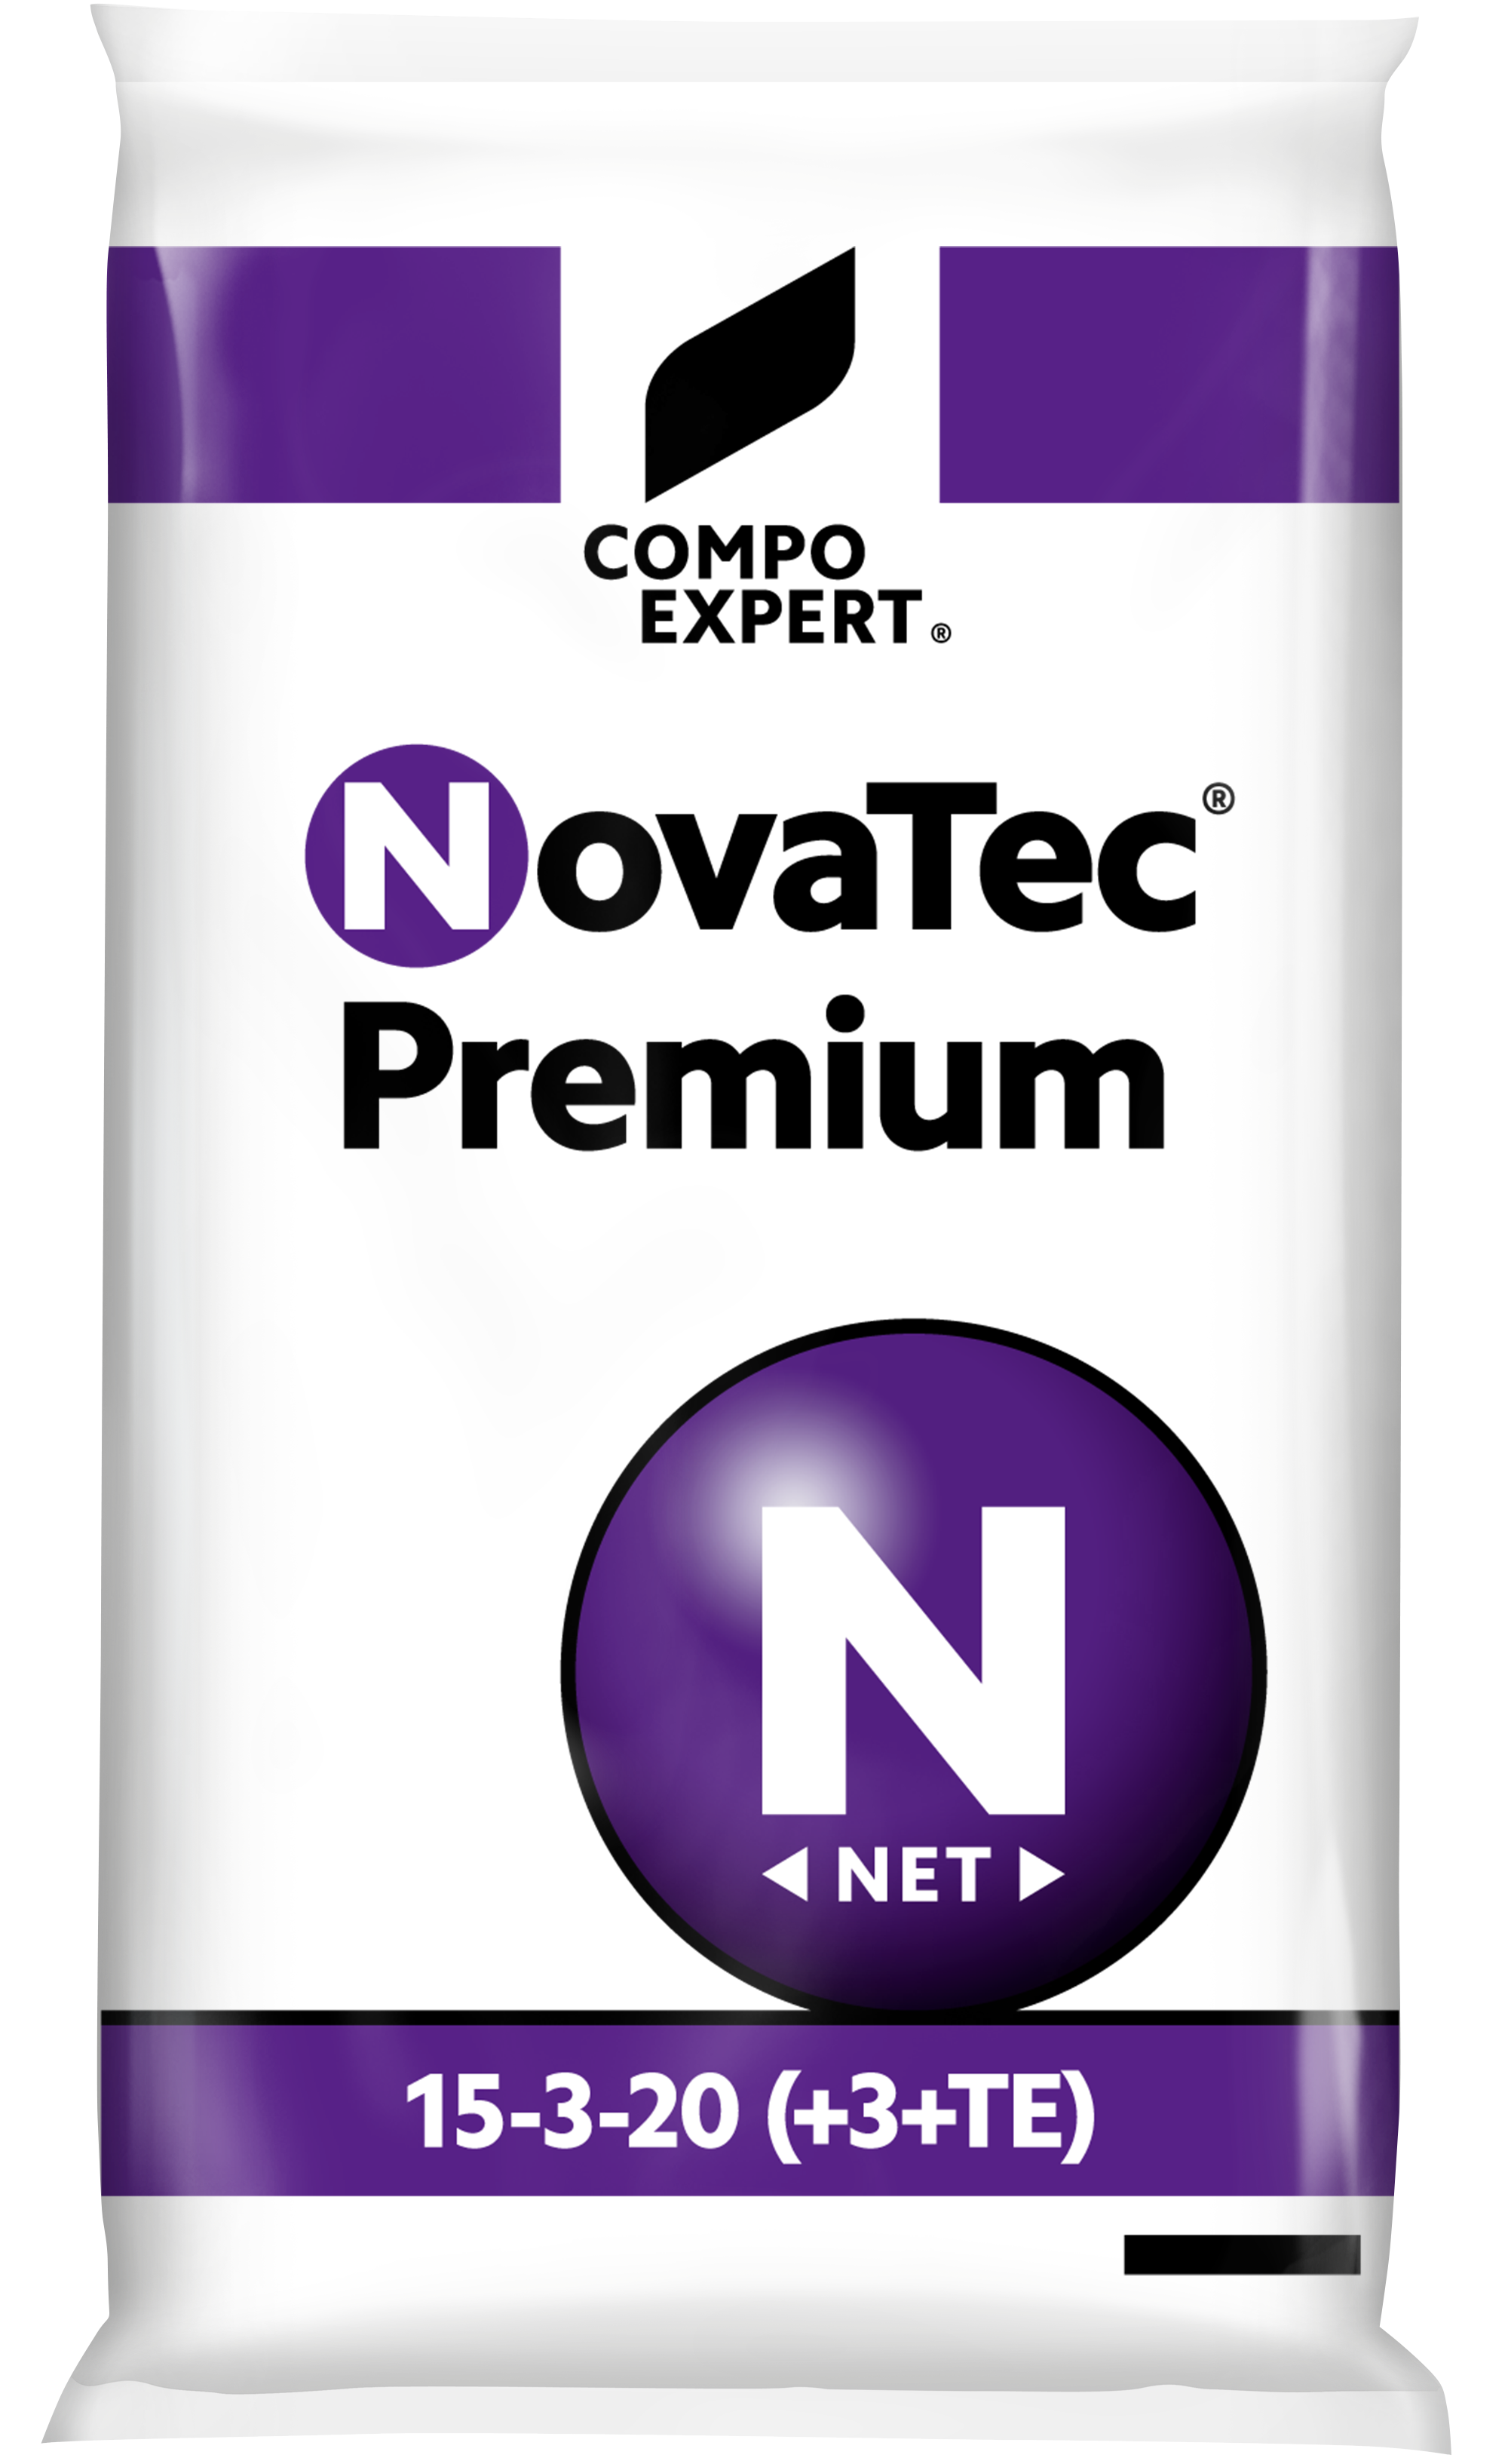 NovaTec® | COMPO EXPERT